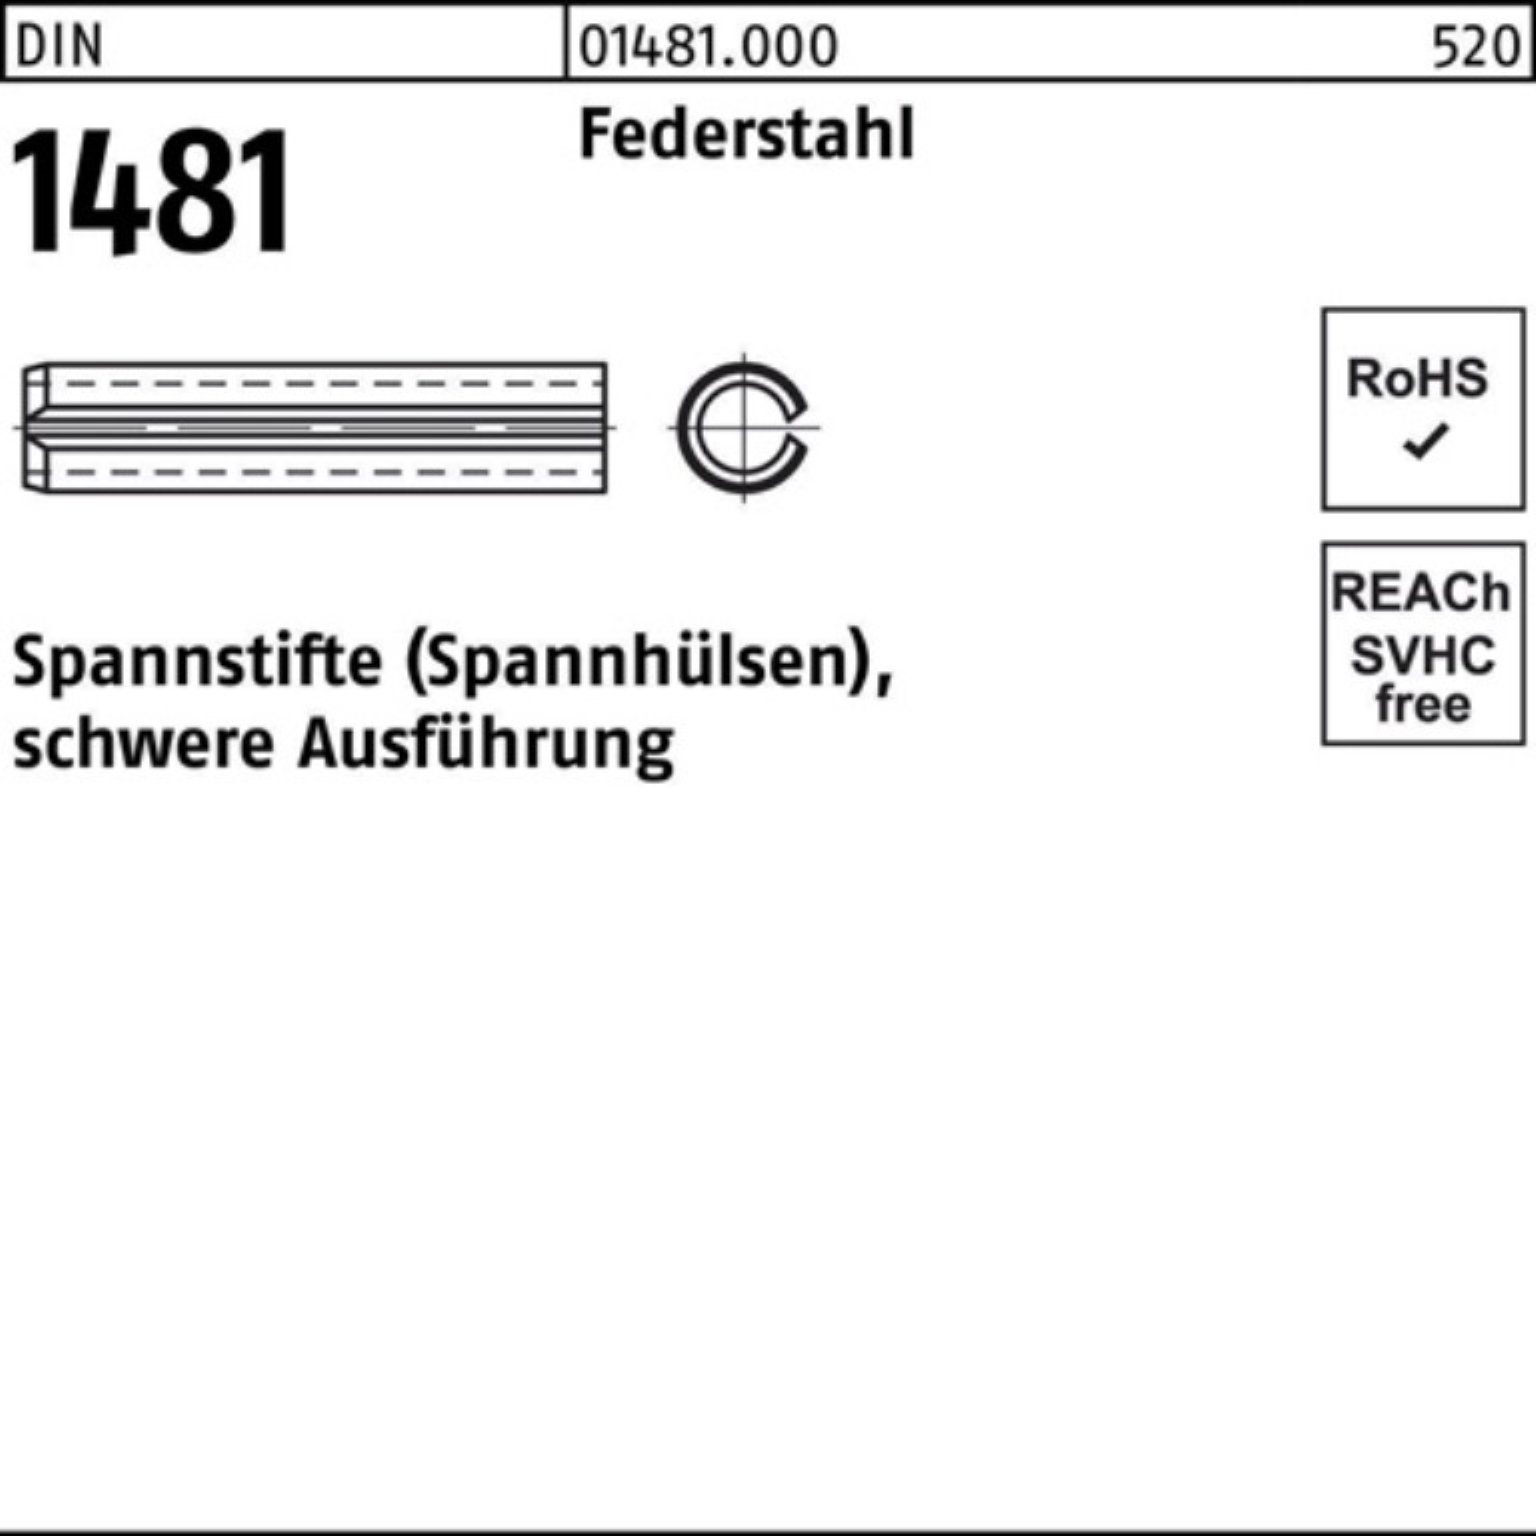 Reyher Spannstift 1000er 2,5x Ausführung Federstahl schwere 1481 Spannstift DIN 16 Pack